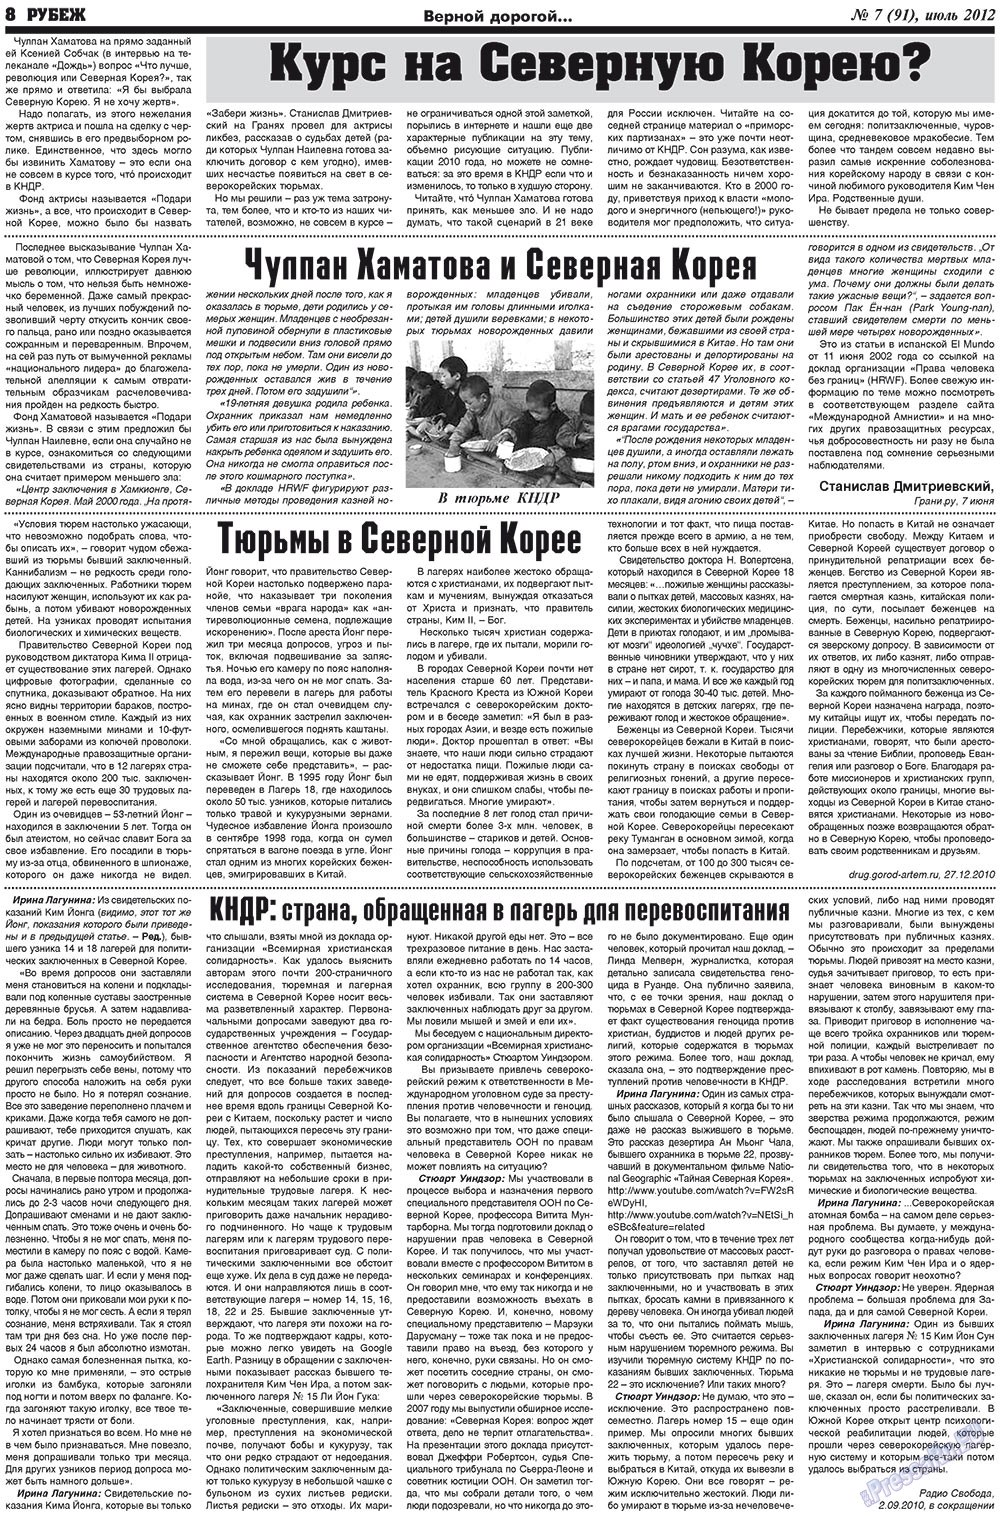 Рубеж (газета). 2012 год, номер 7, стр. 8